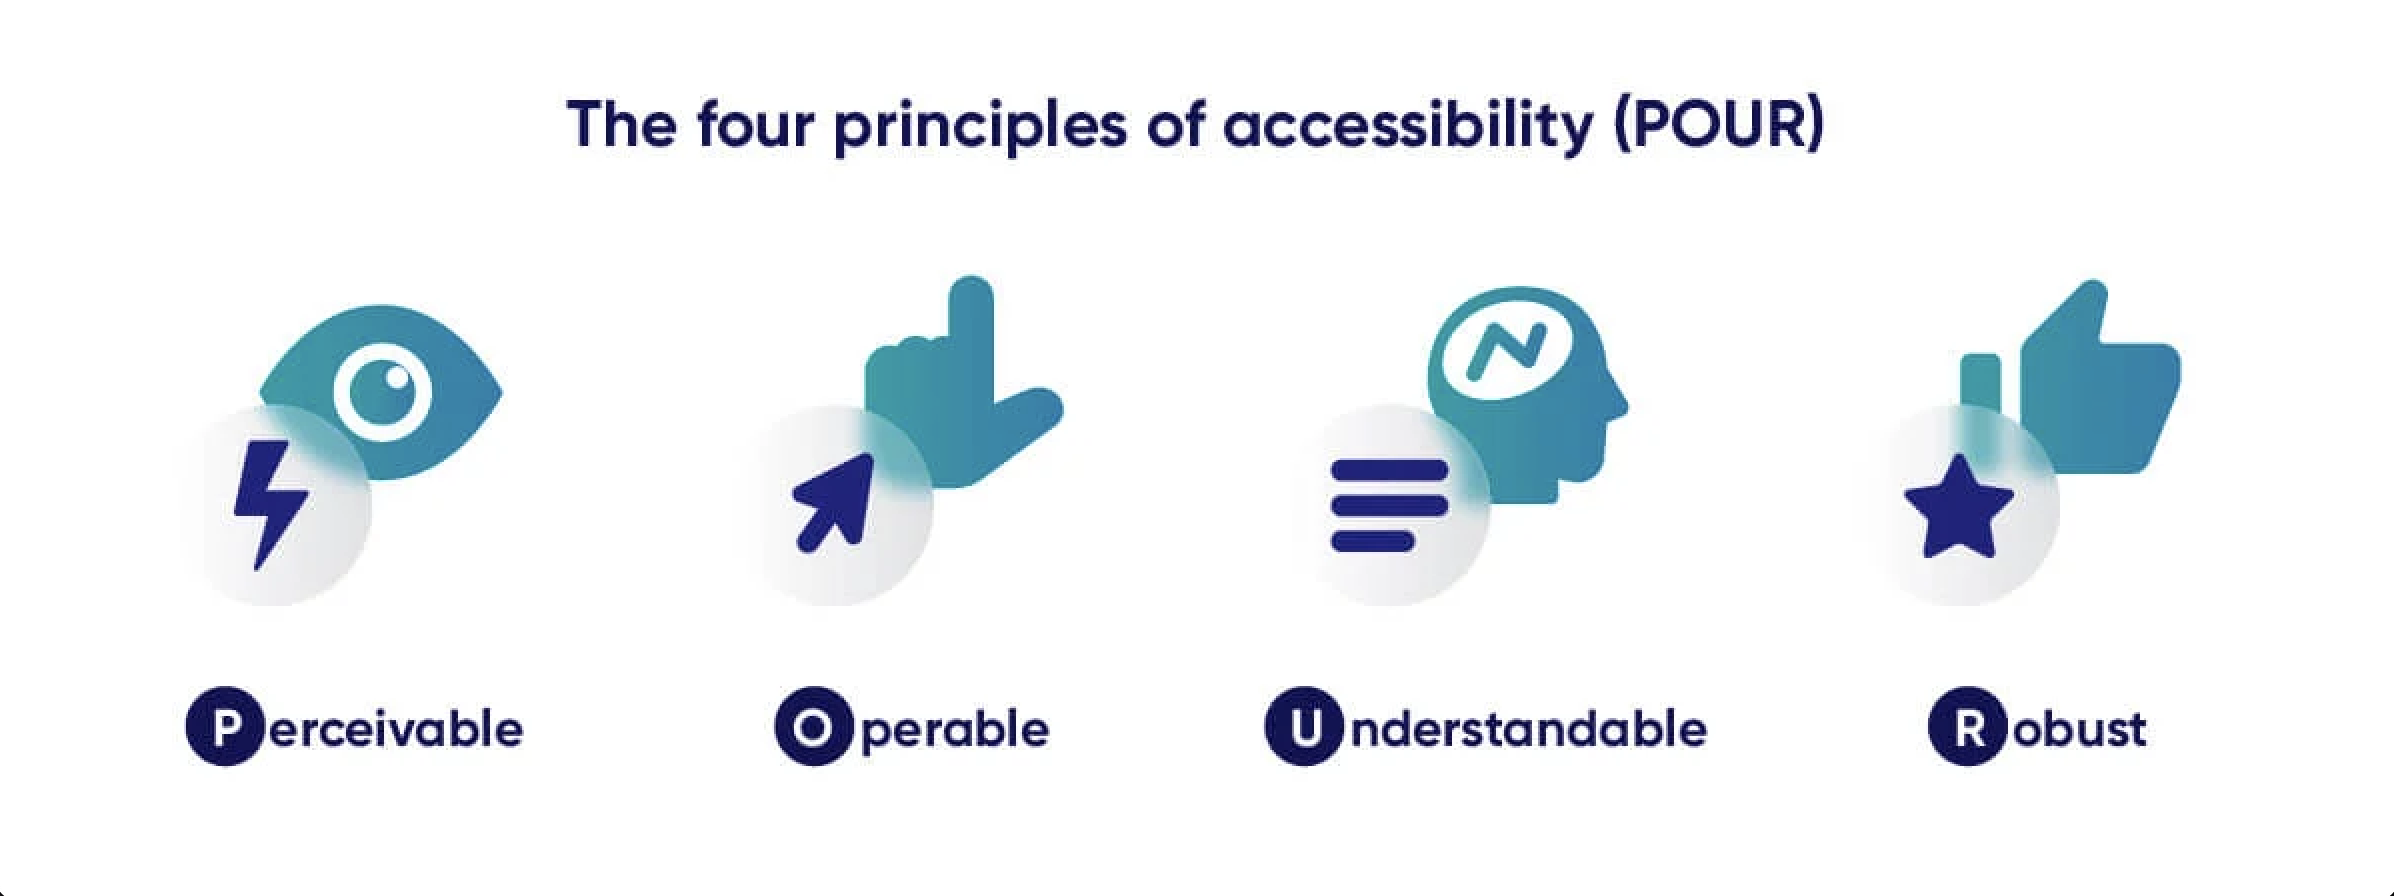 pour-accessibility